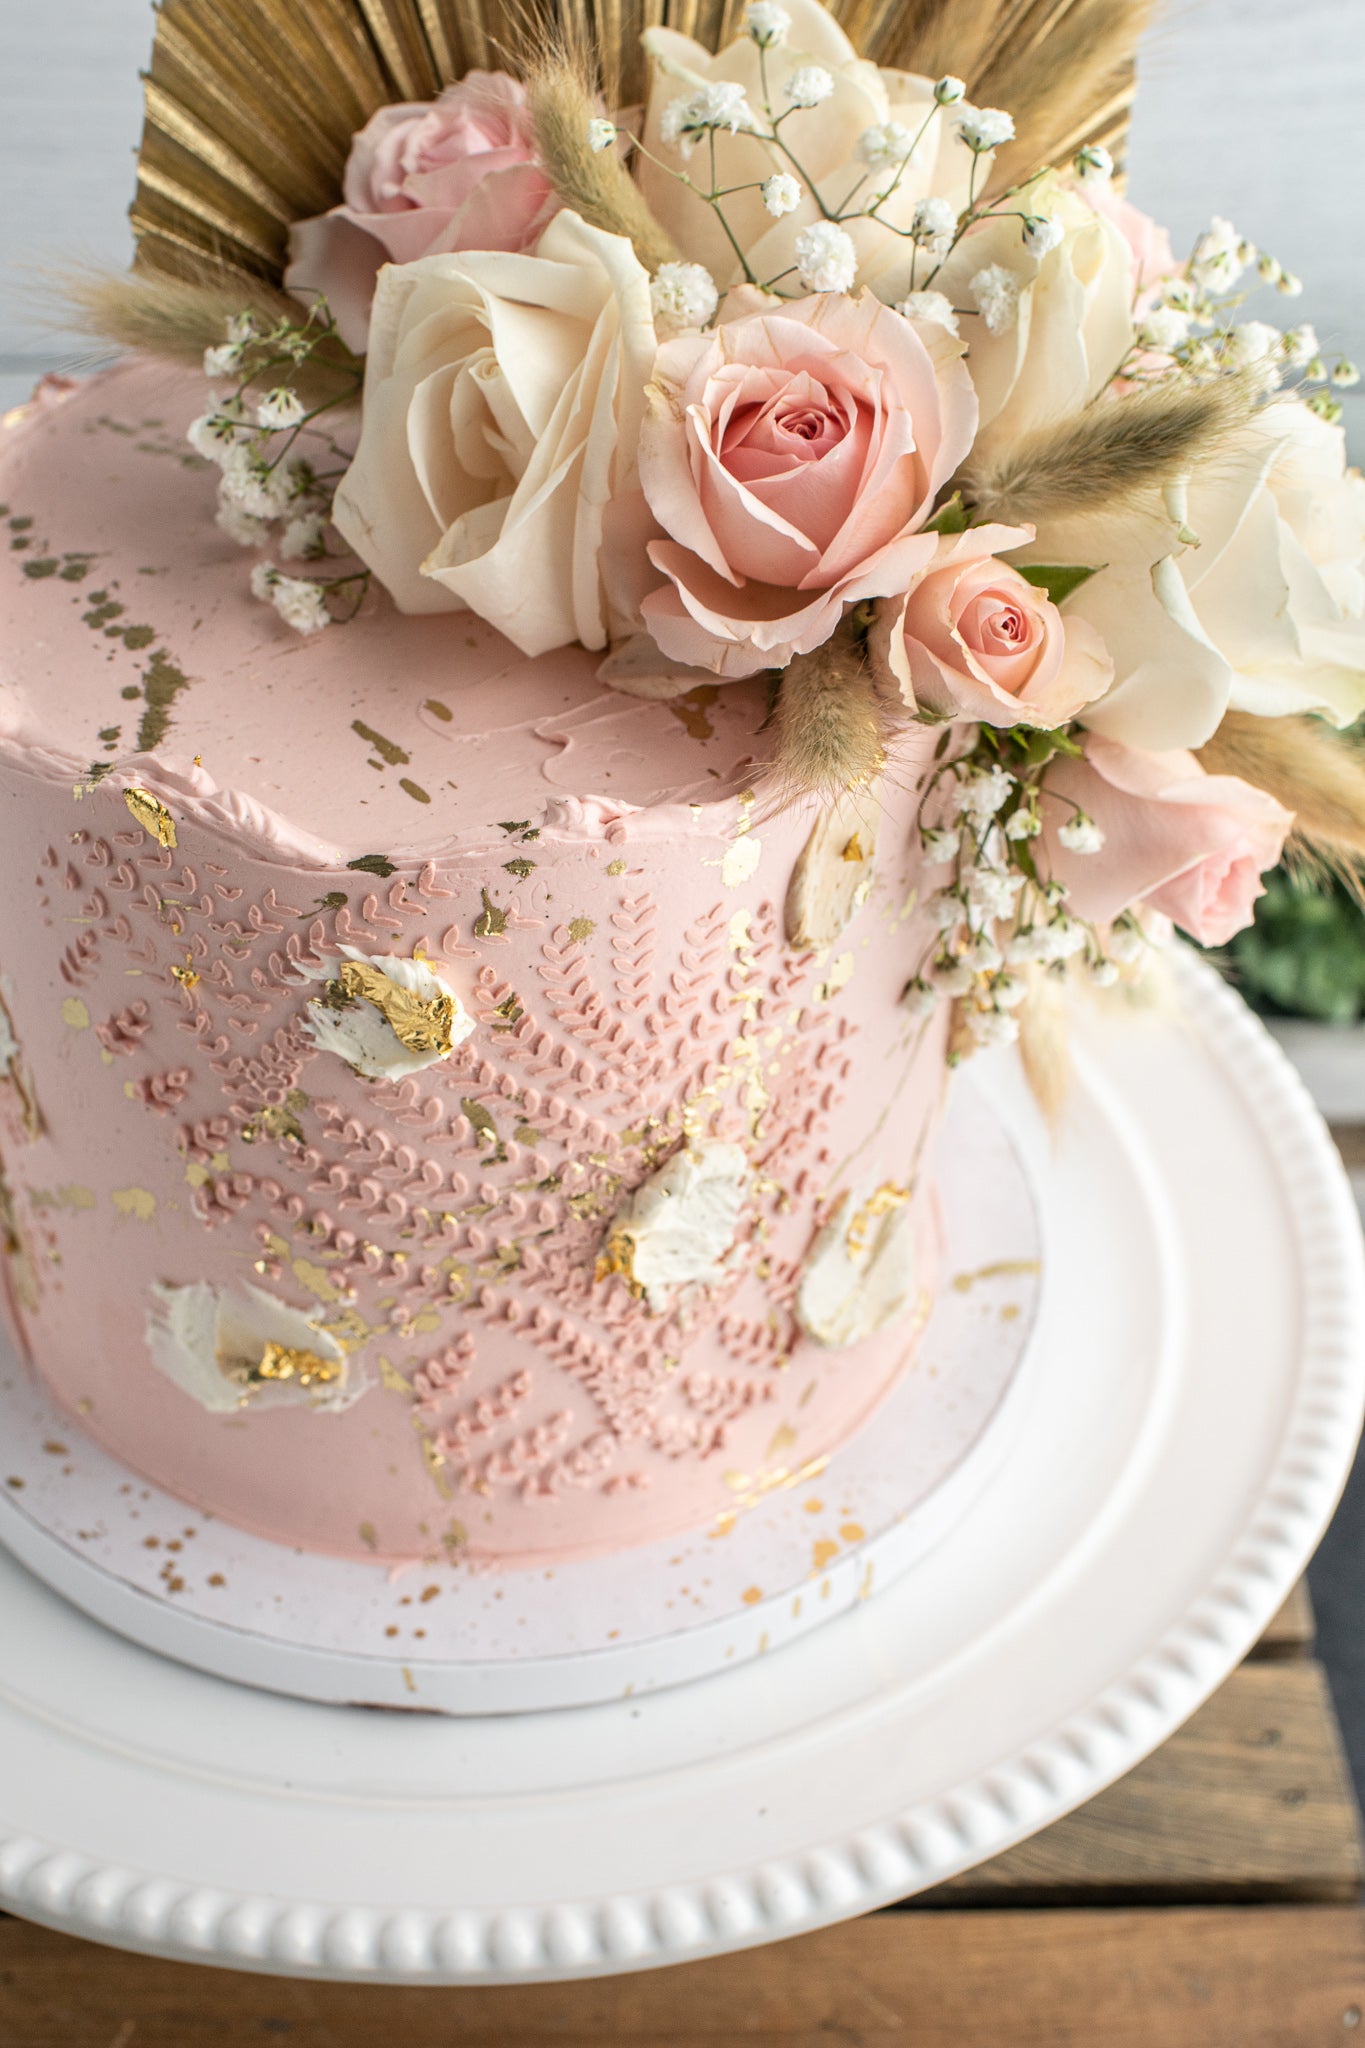 So Yummy Chocolate Birthday Cake | Cake Style 2021 | Best Tasty Cake  Decorating Ideas - YouTube